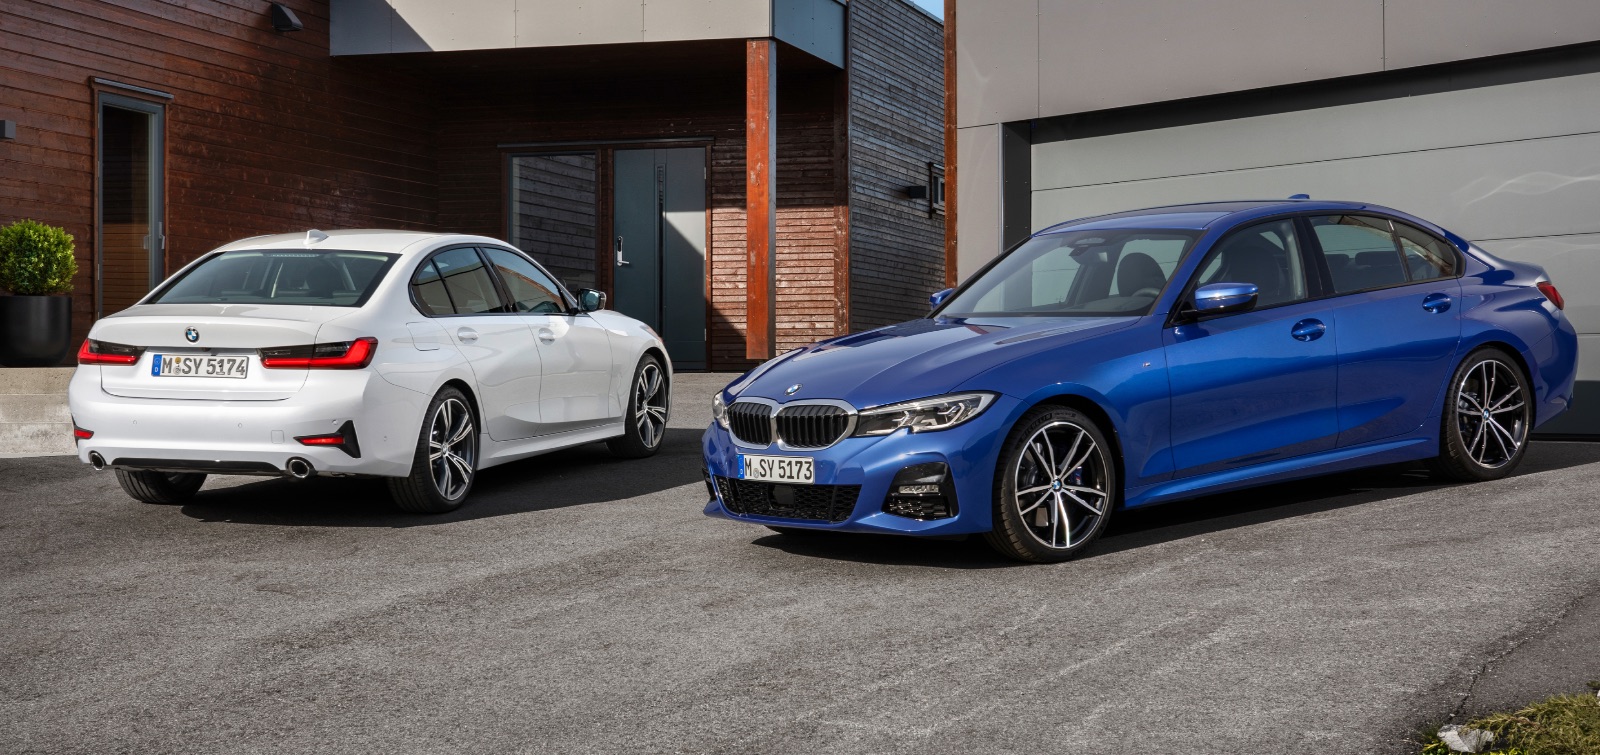 nuova BMW Serie 3 2019 prezzi da 40.550 euro